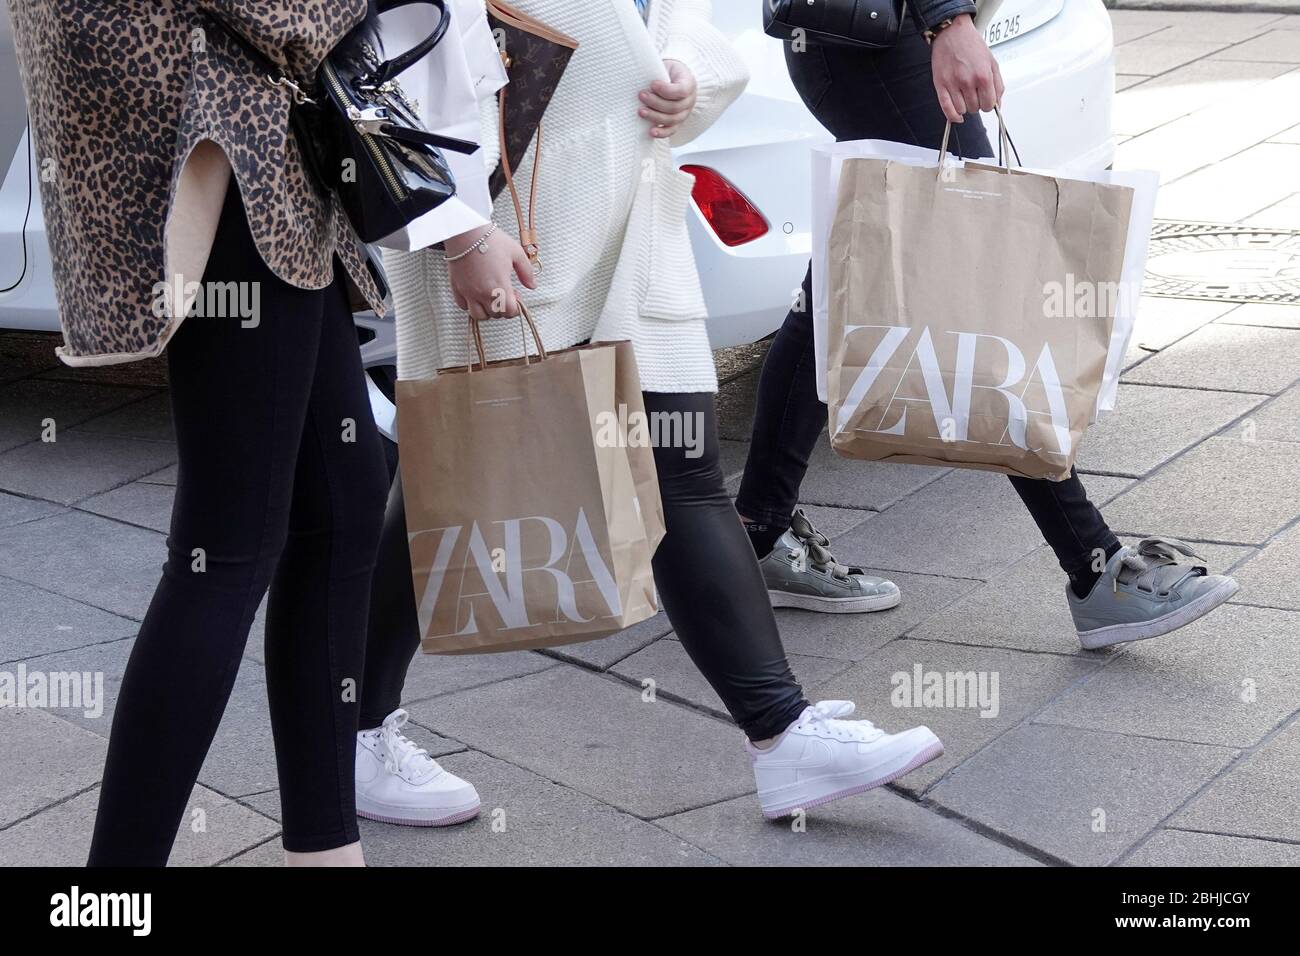 Hamburg, Deutschland. April 2020. Passanten spazieren mit Einkaufstaschen  der Modekette Zara durch die Hamburger Innenstadt. Kredit: Bodo  Marks/dpa/Alamy Live News Stockfotografie - Alamy